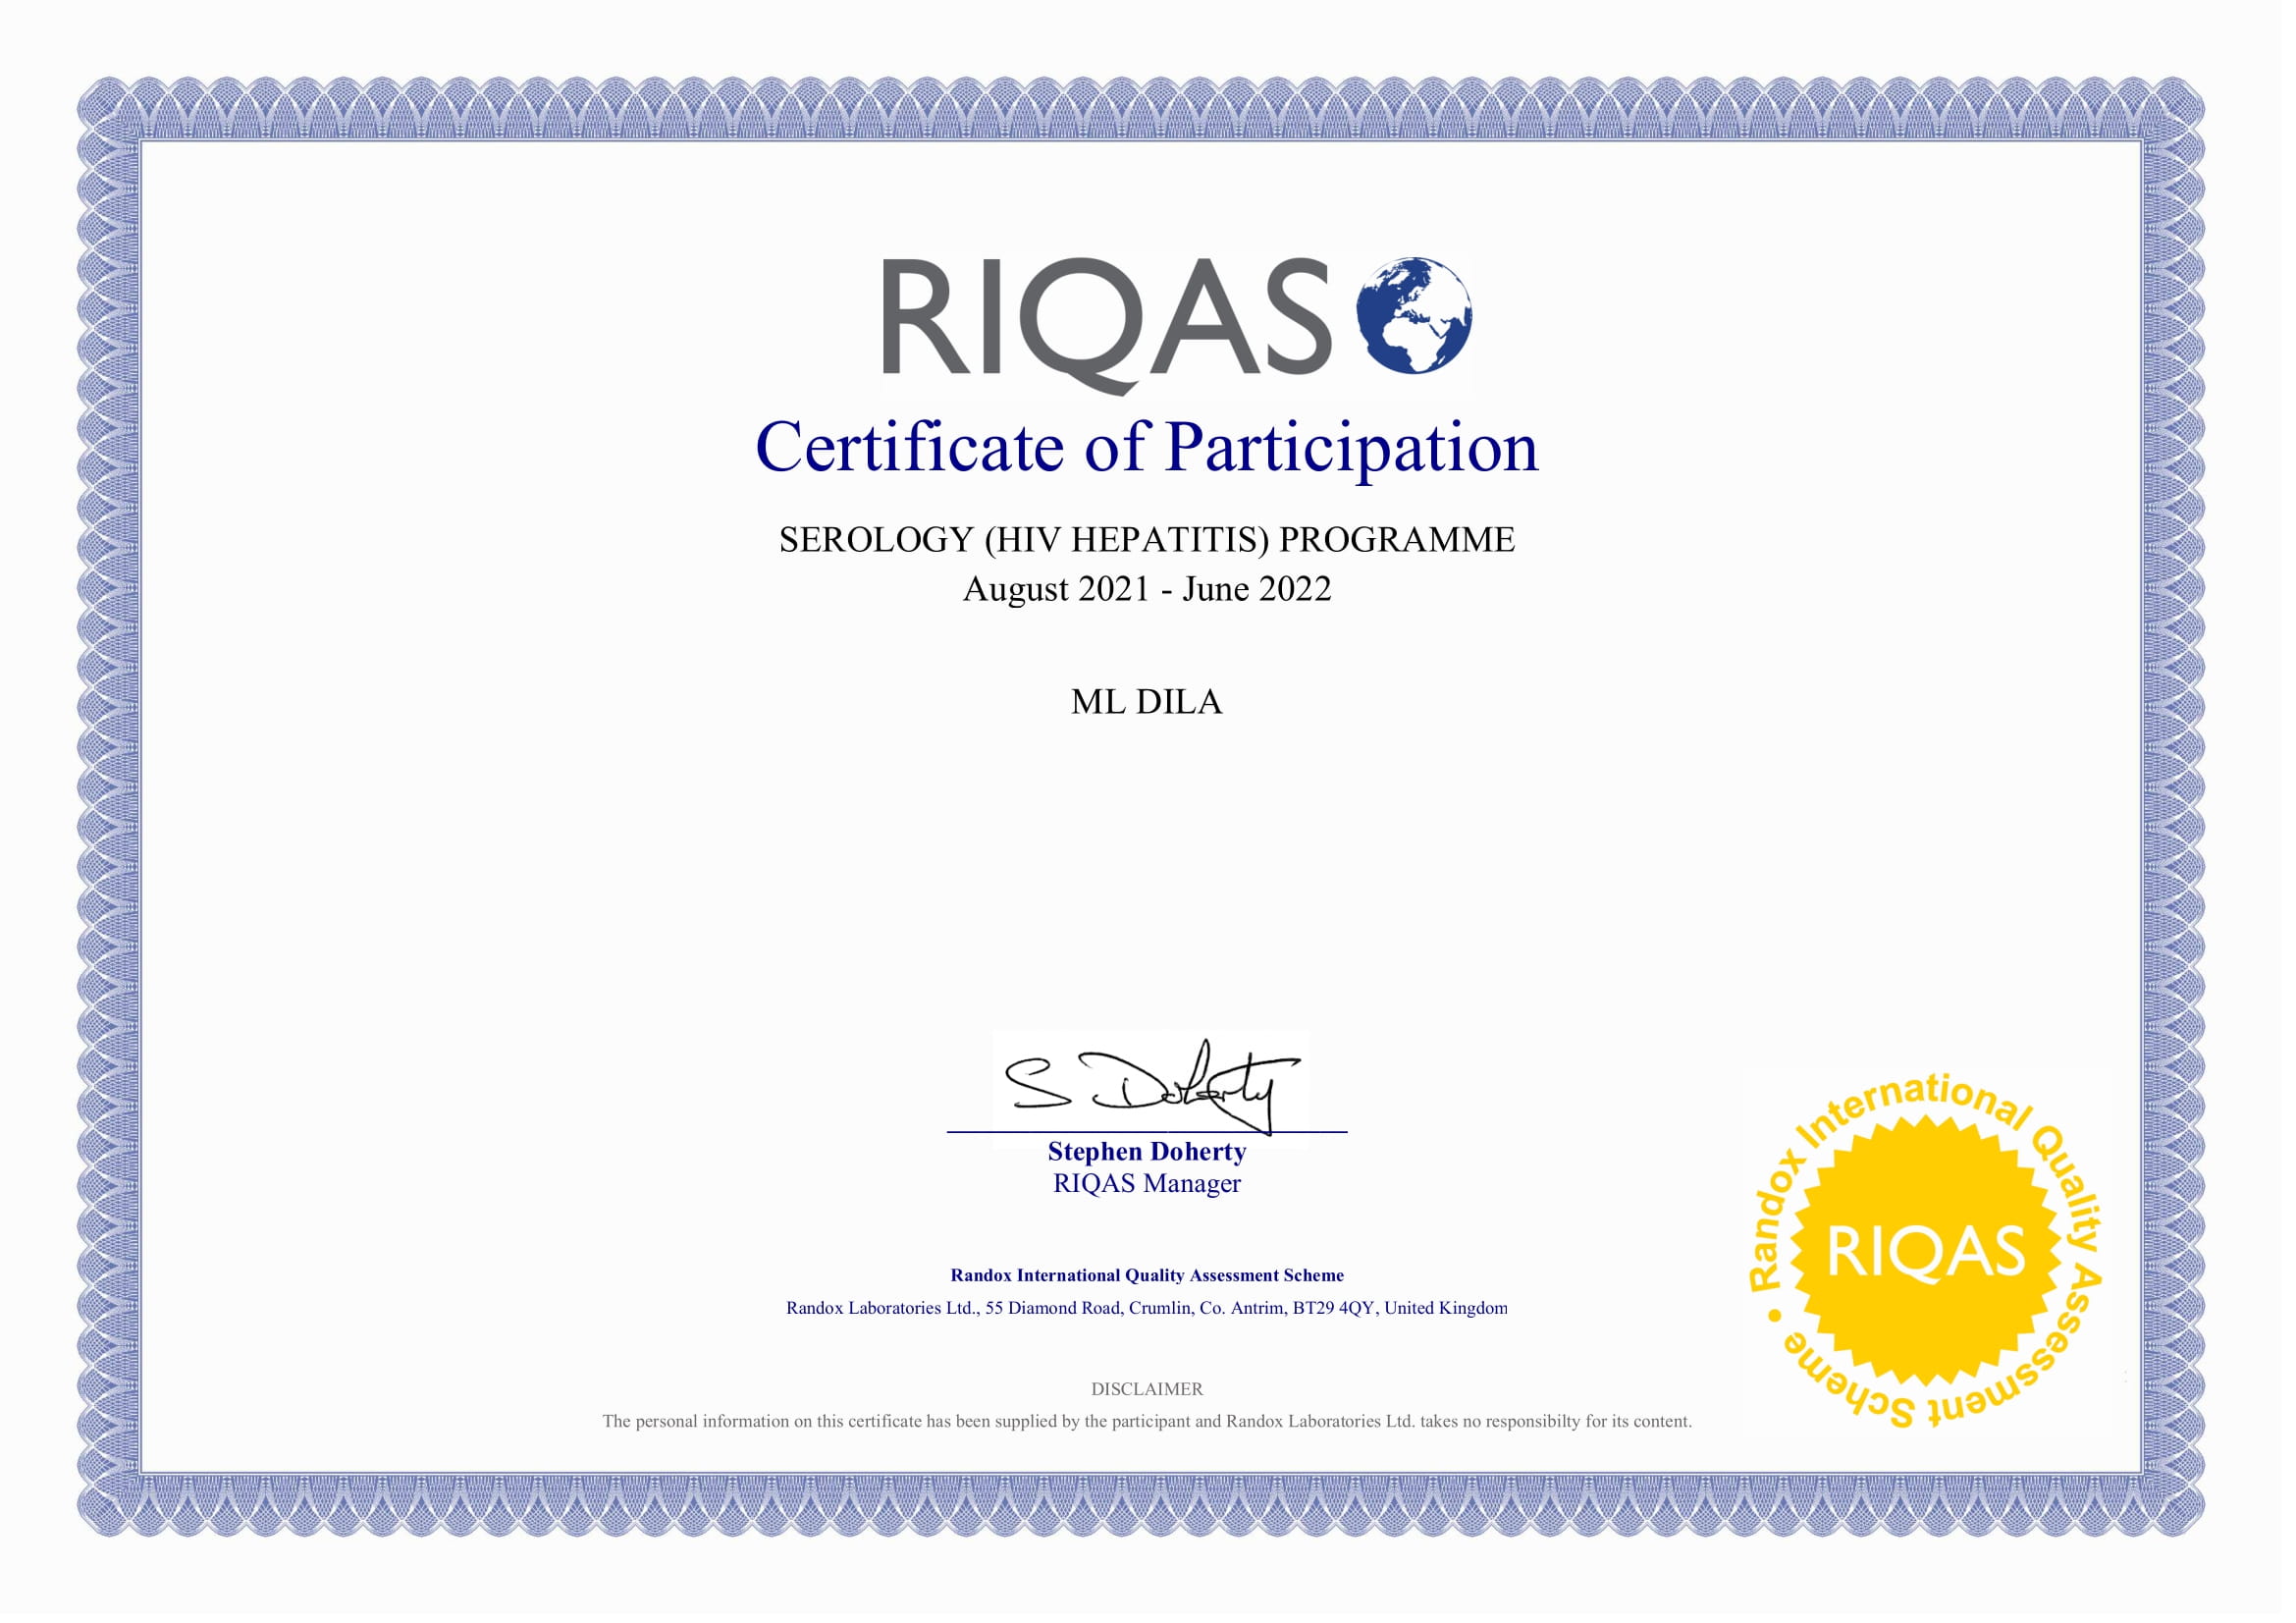 Фото - Сертификат участия в программе внешней оценки качества RIQAS (Серология ВИЧ Гепатиты)